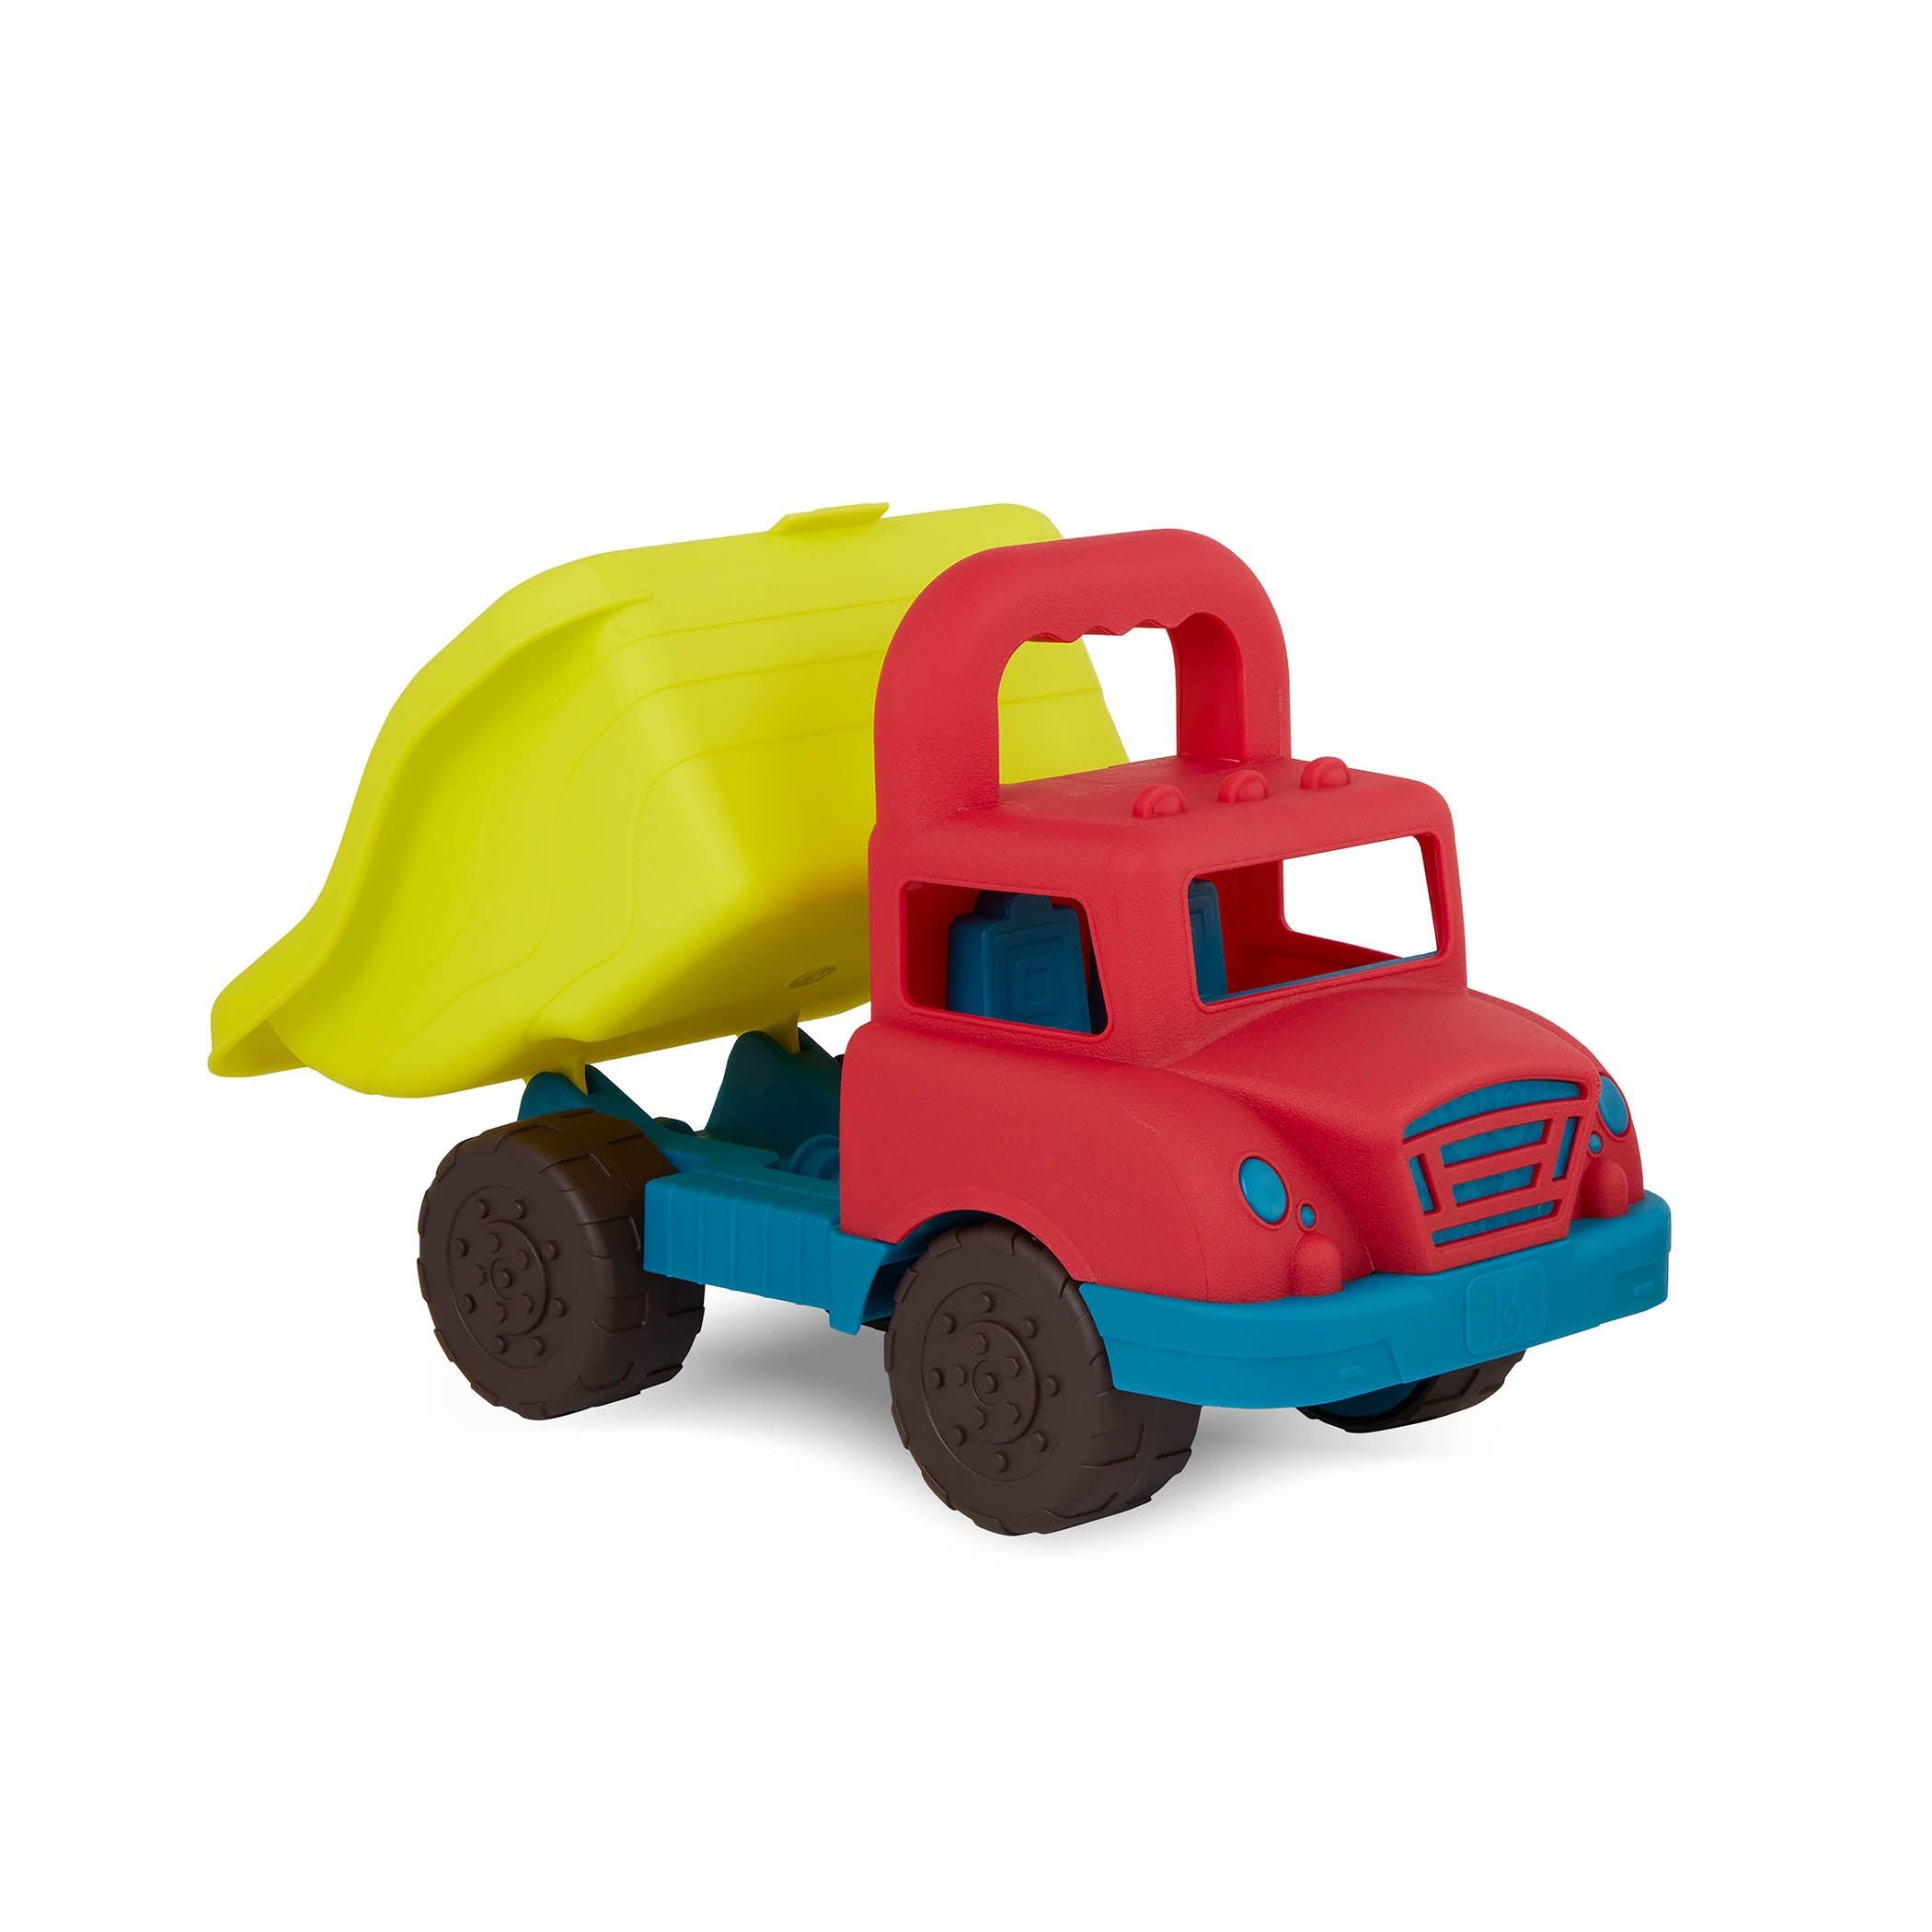 B.Toys: Tipper lastbil med grab-n-go lastbilhandtag